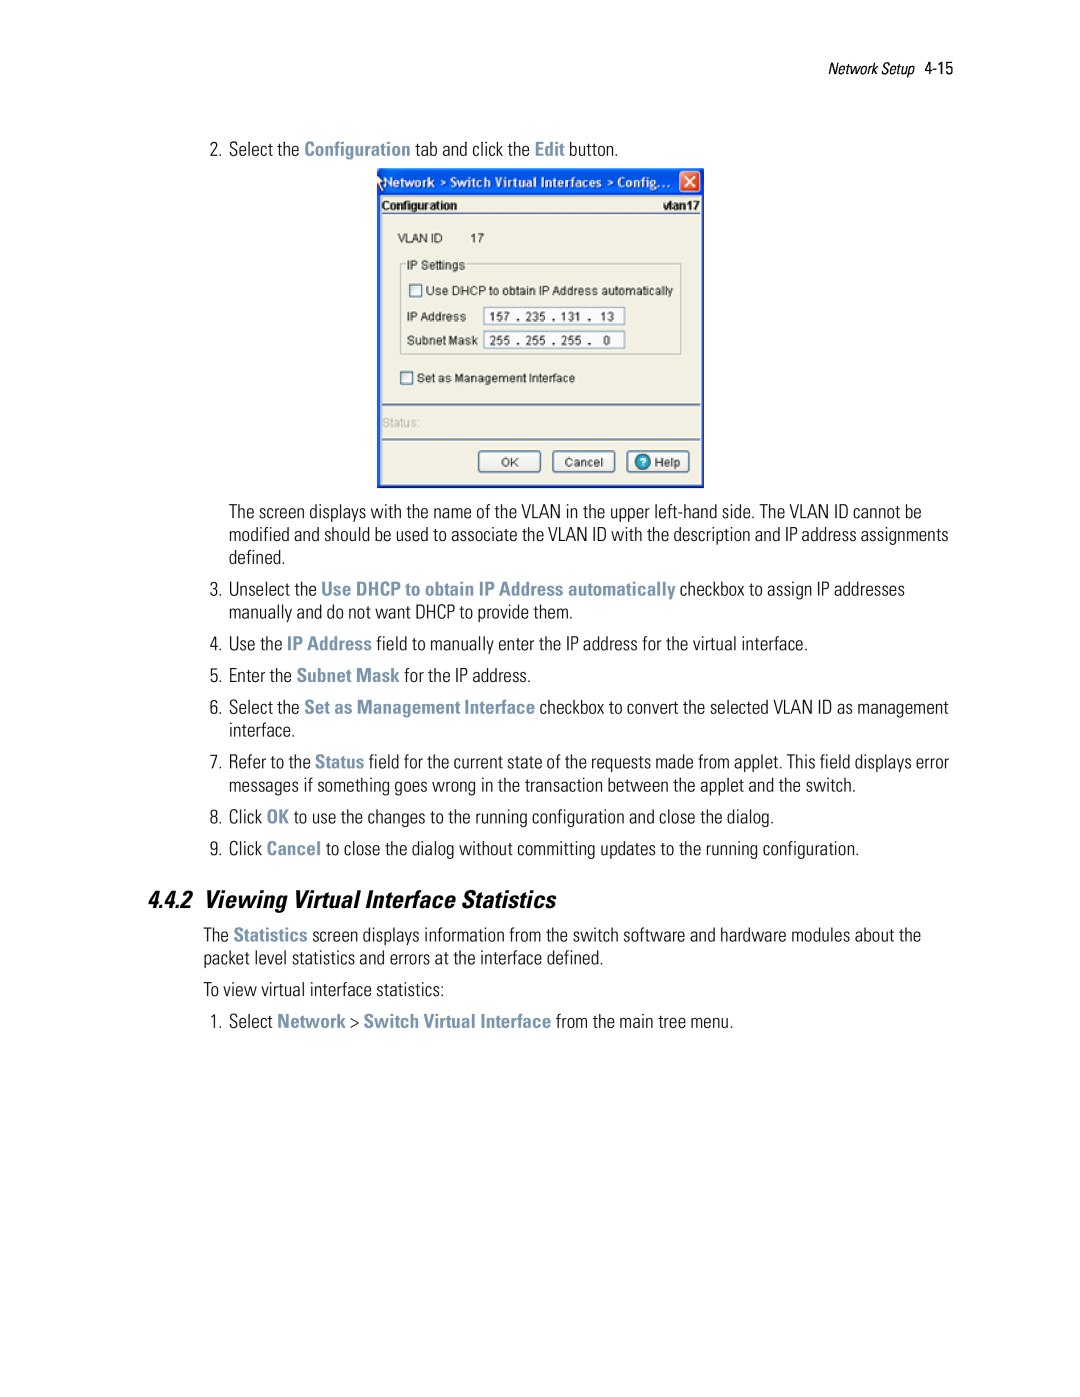 Motorola WS5100 manual 4.4.2Viewing Virtual Interface Statistics 